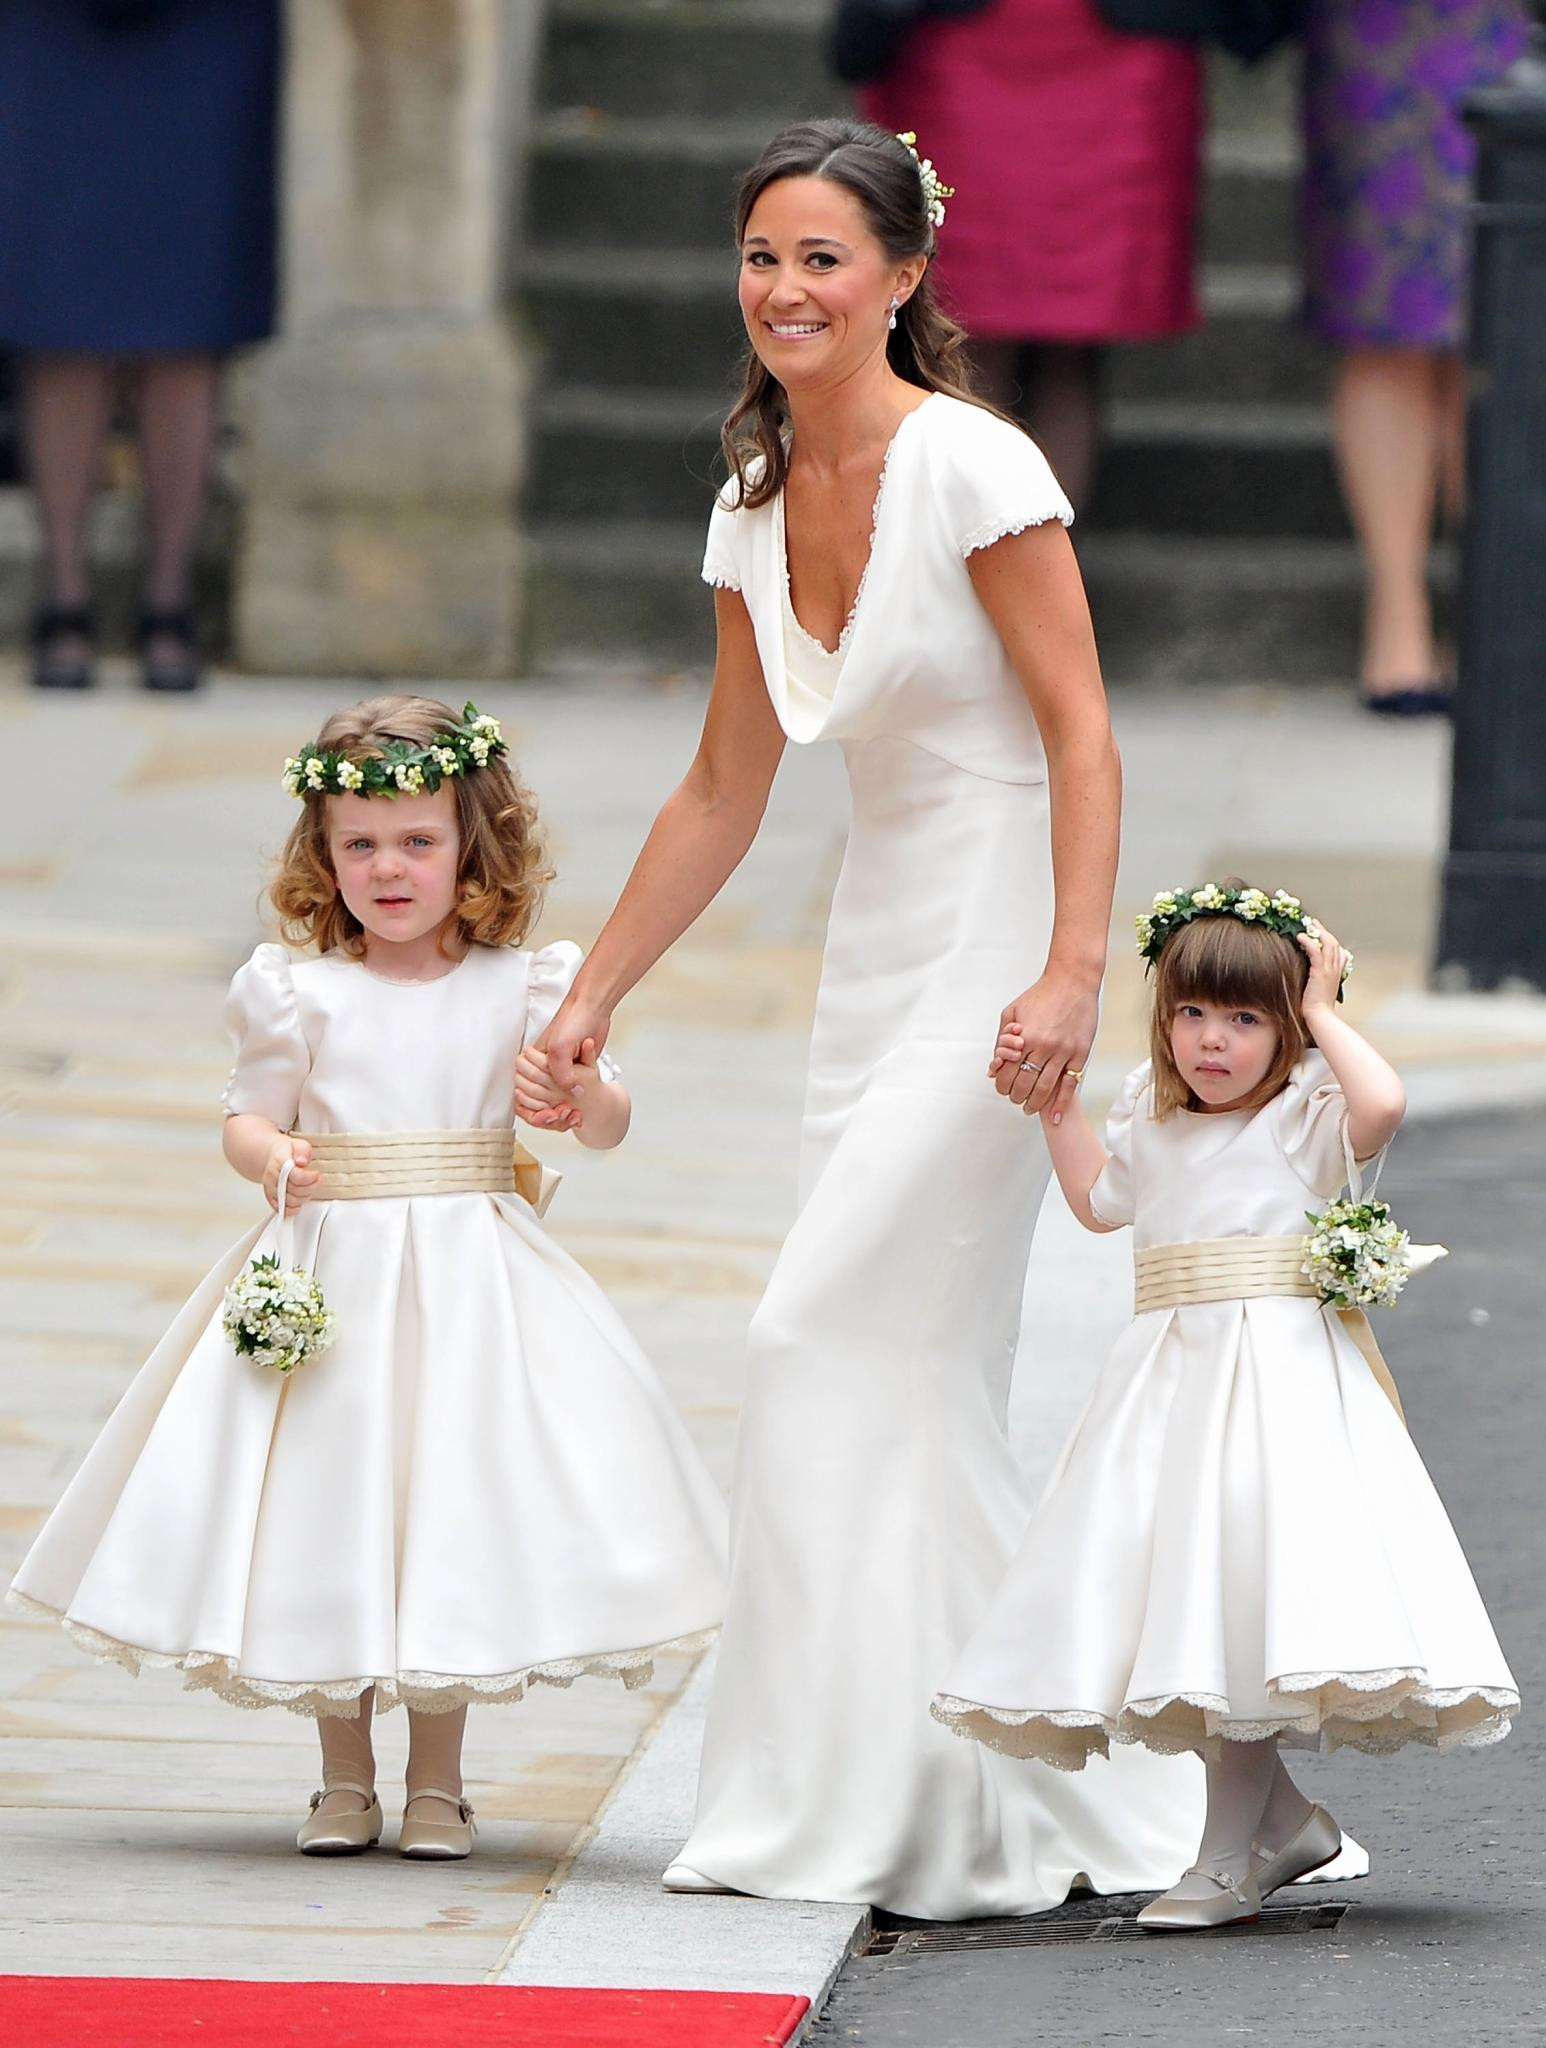 Pippa Hochzeitskleid
 Pippa Middleton Rätselraten um ihr Brautkleid